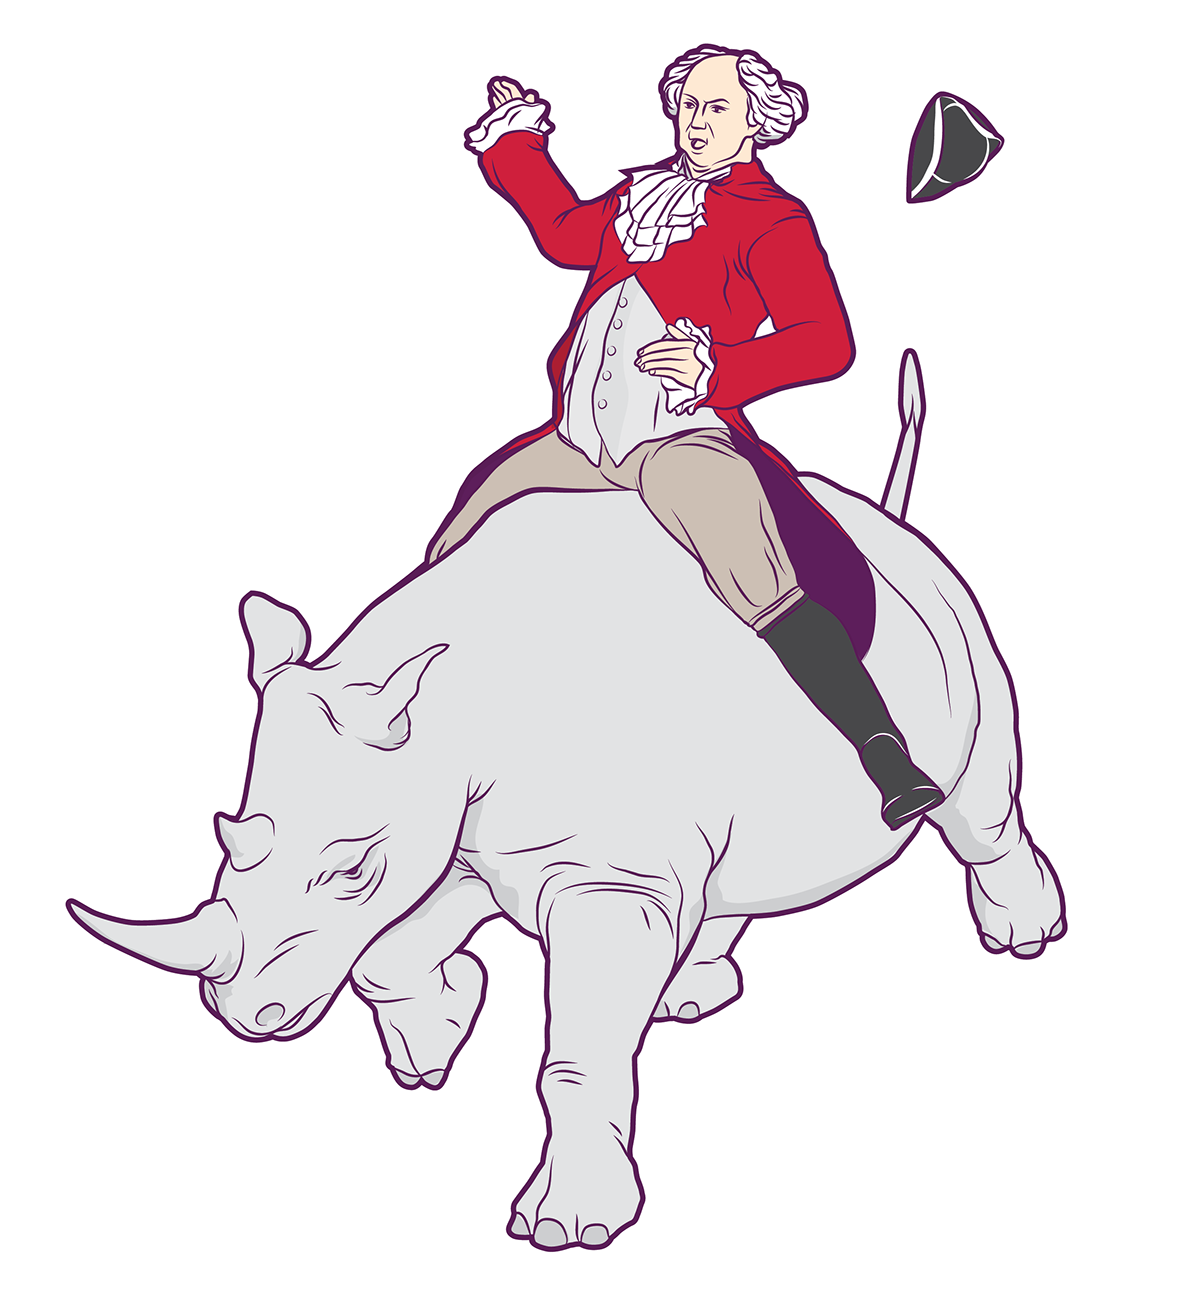 John Adams on a Rhinoceros